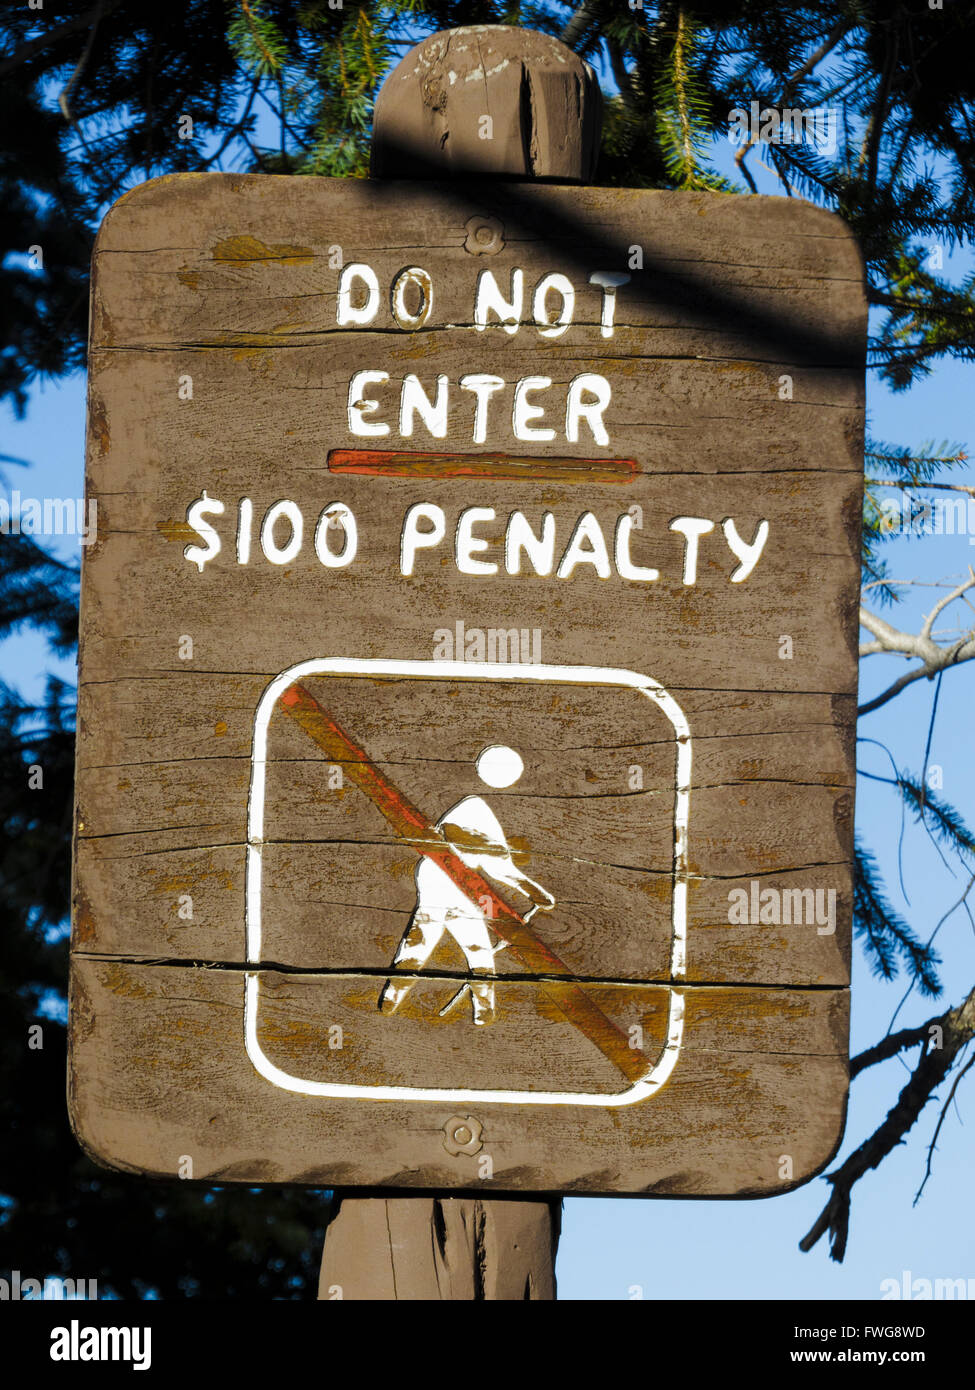 Melden Sie sich, "Geben Sie nicht, 100 $ Strafe" am Bryce-Canyon-Nationalpark, Utah, USA. Stockfoto